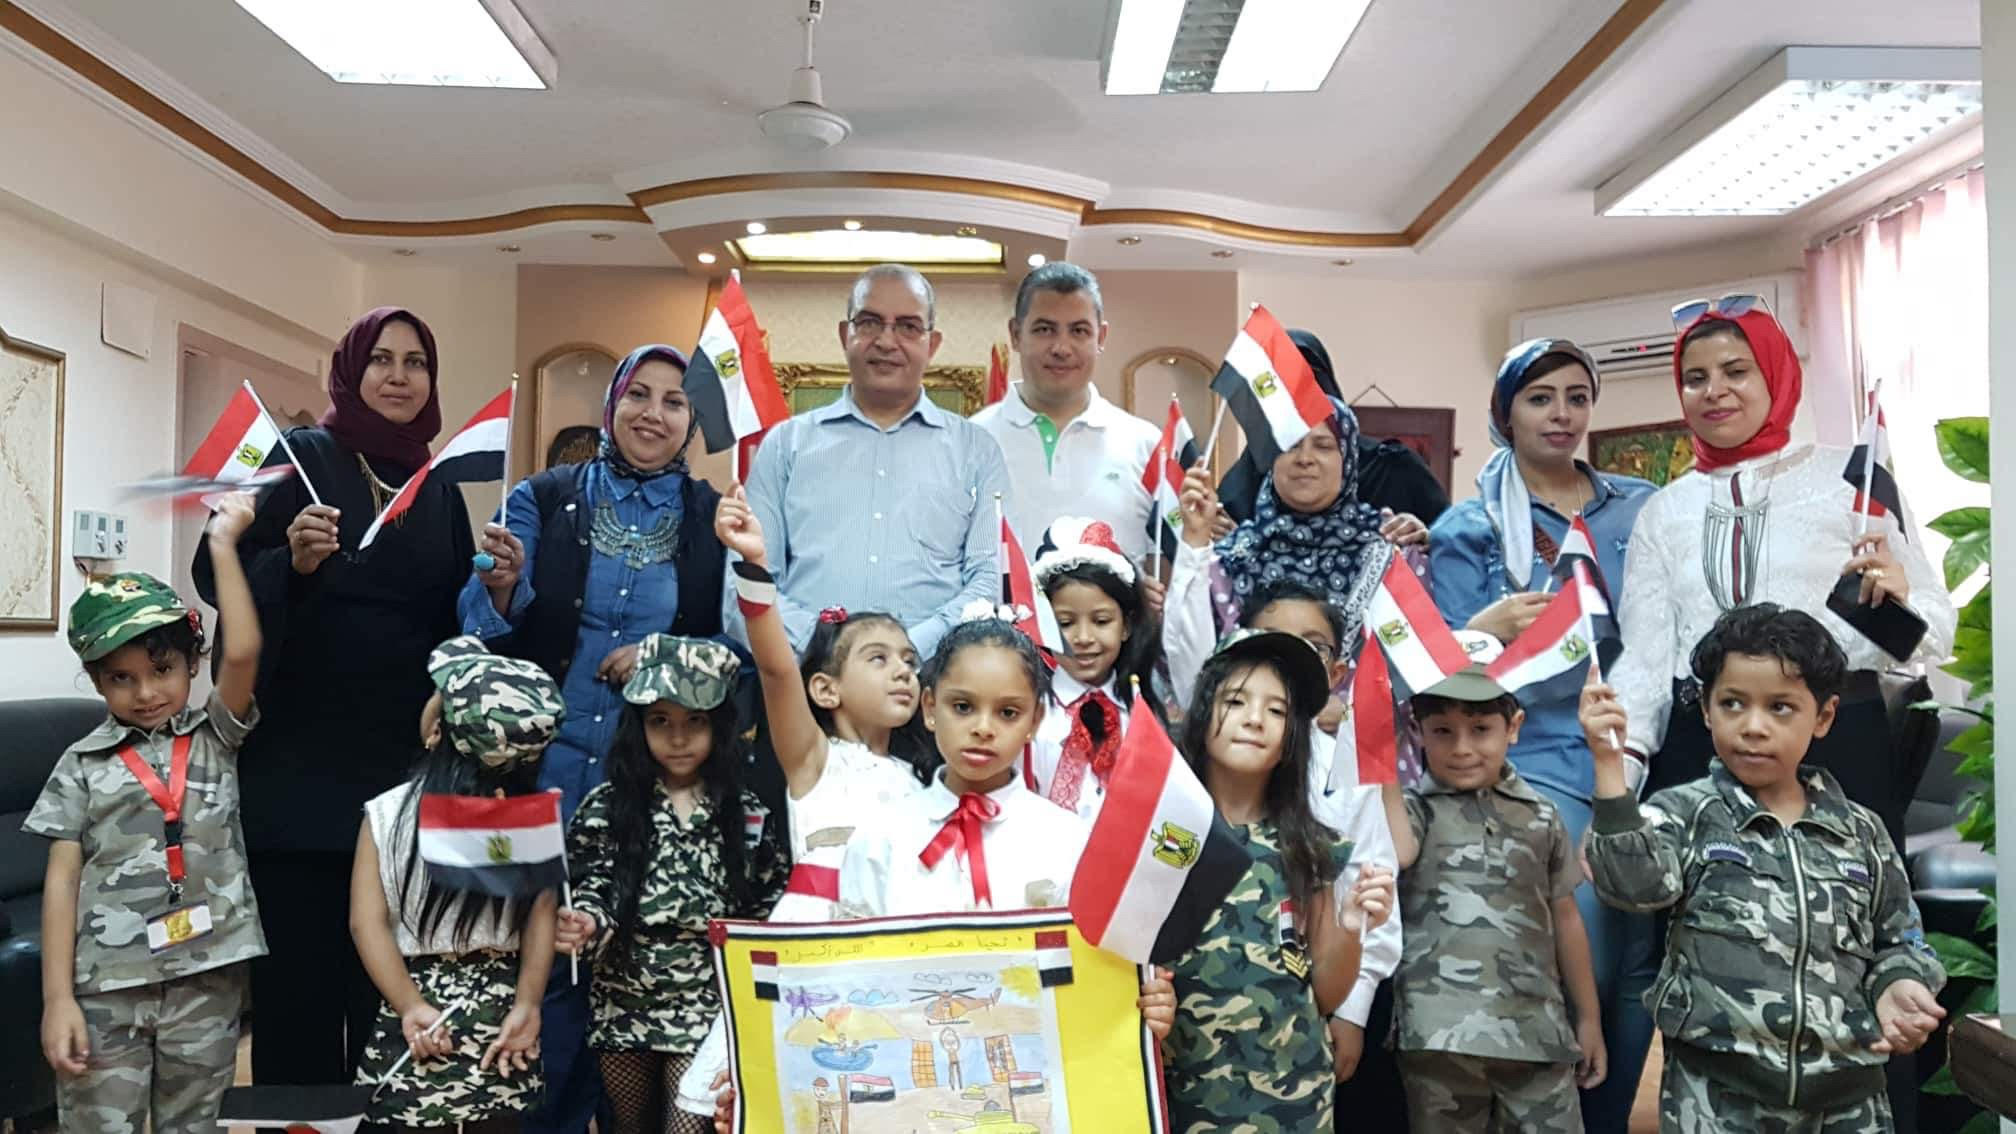 أطفال روضة الزهراء يحتفلون مع وكيل وزارة التربية والتعليم بذكرى نصر أكتوبر   صور - 